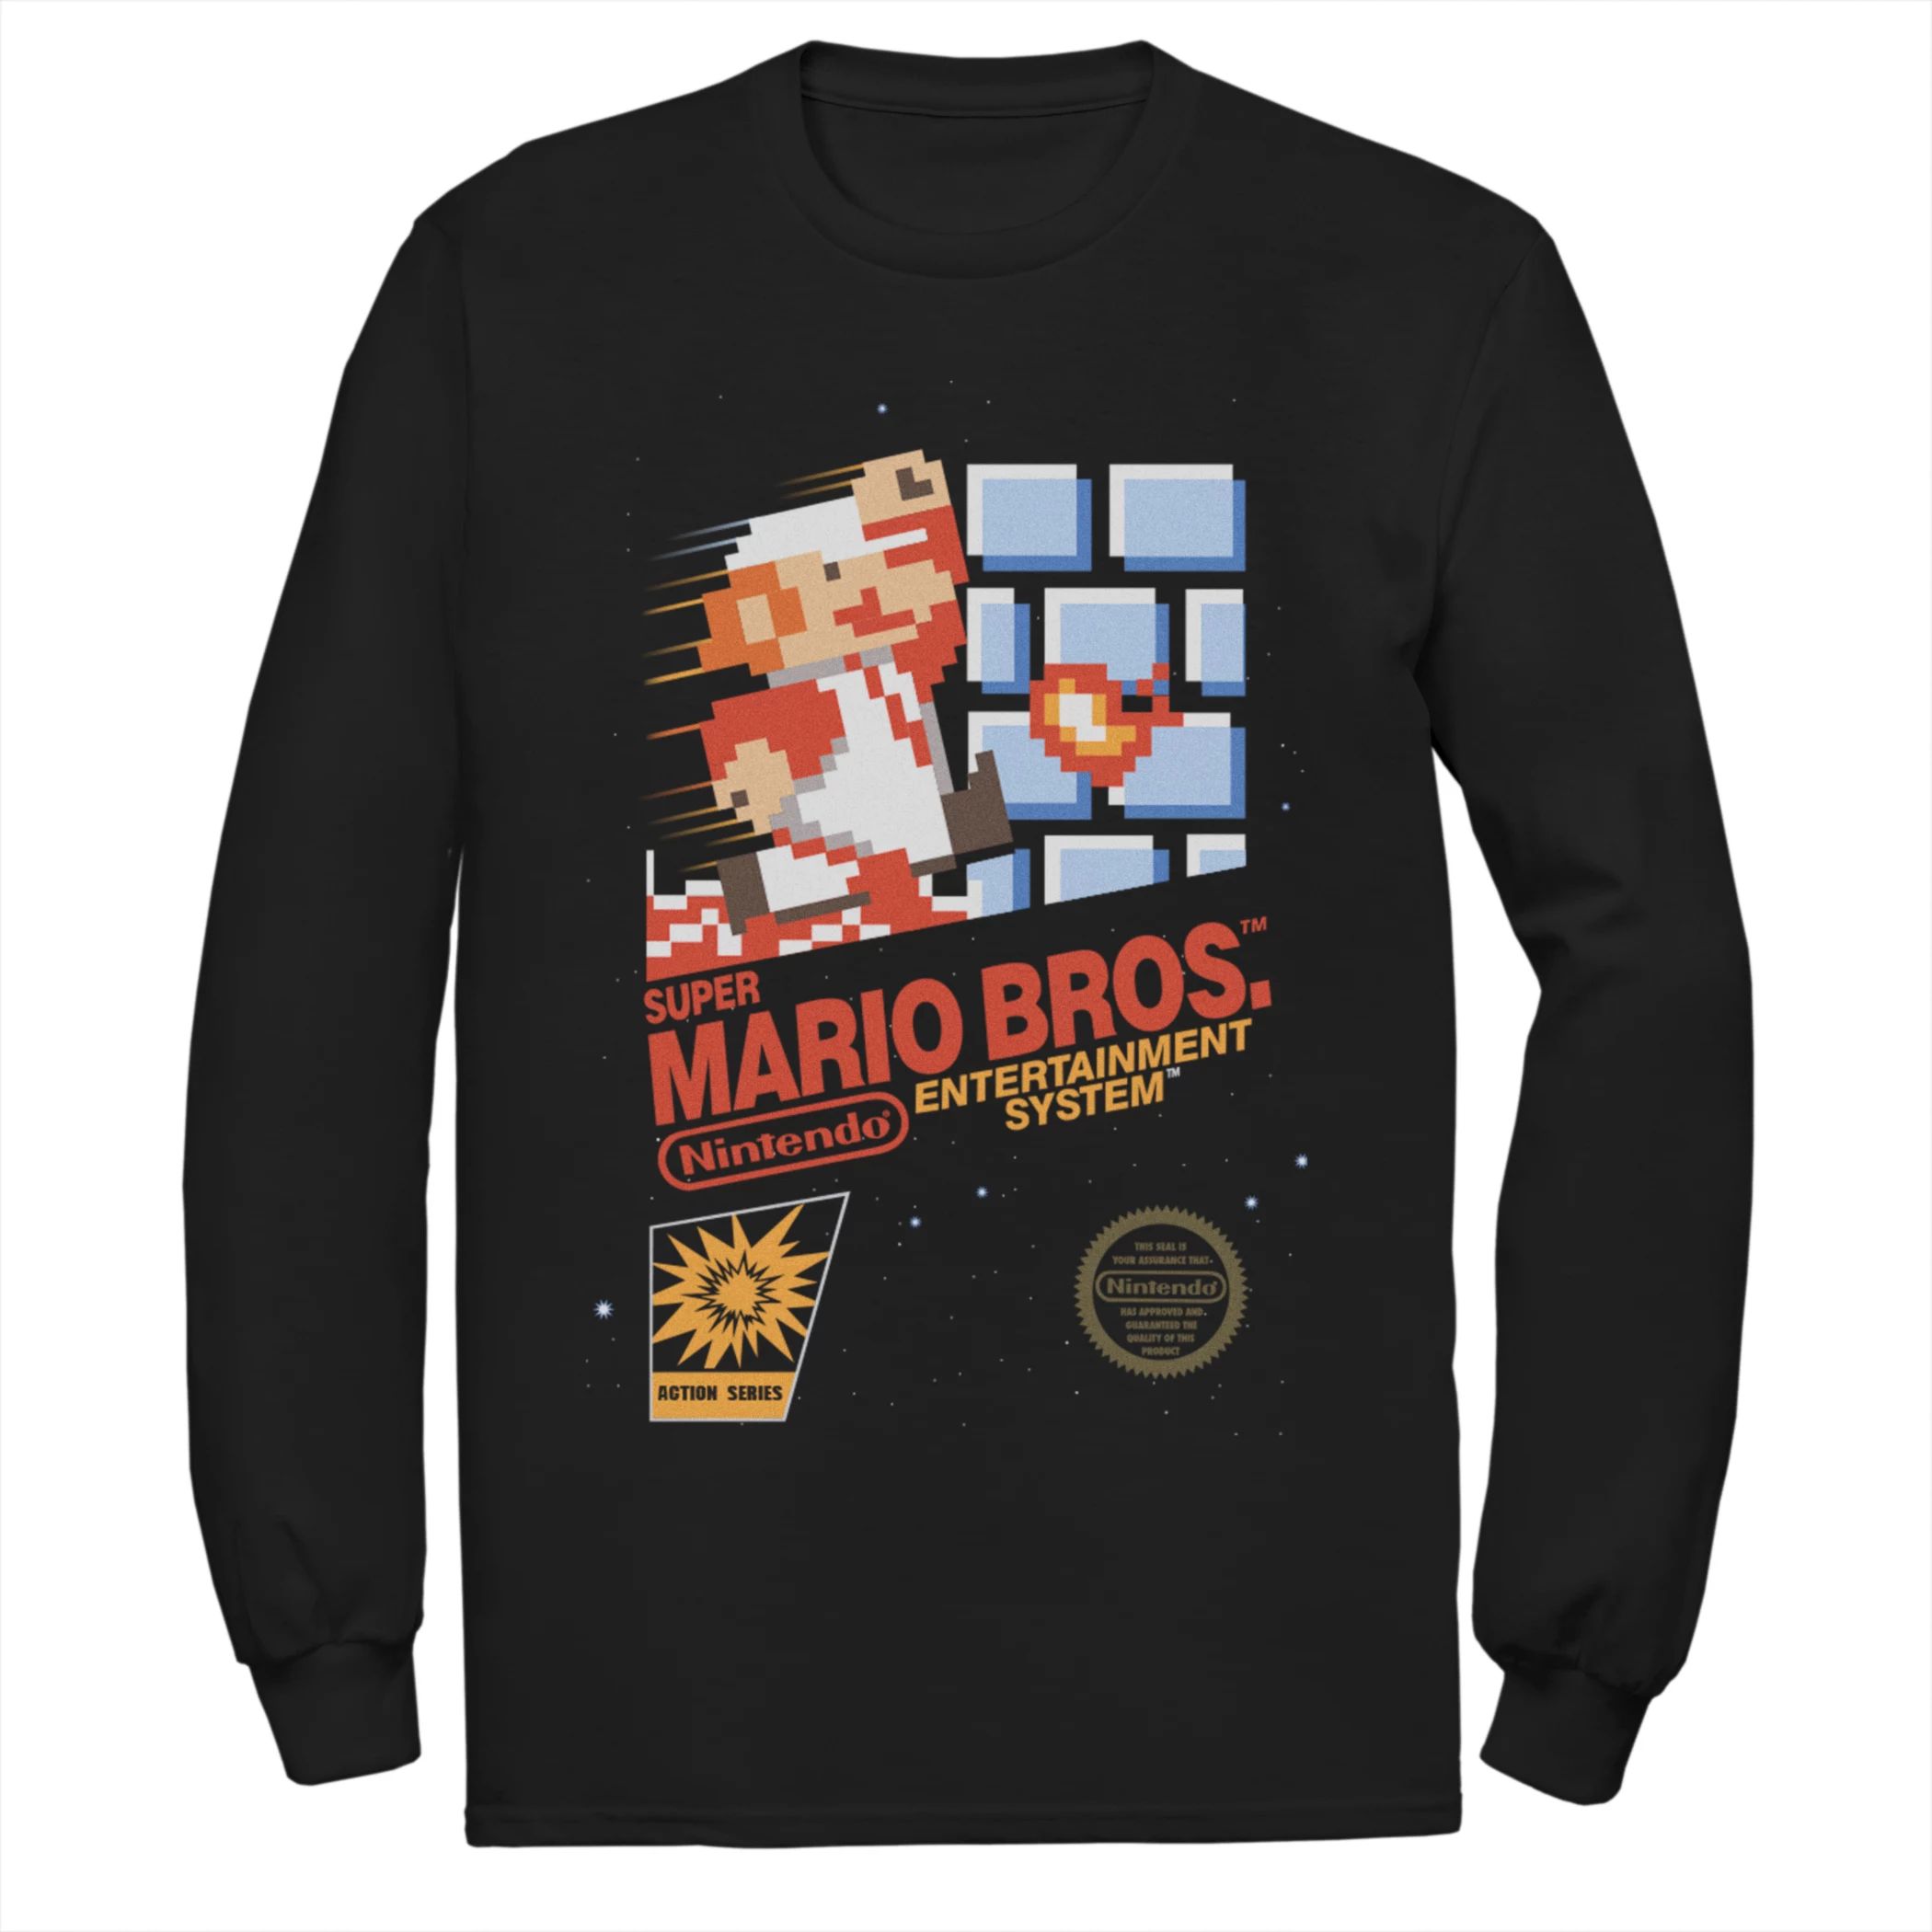 Мужская футболка Nintendo Super Mario Bros. Licensed Character фигурка nintendo amiibo инклинг super smash bros коллекция